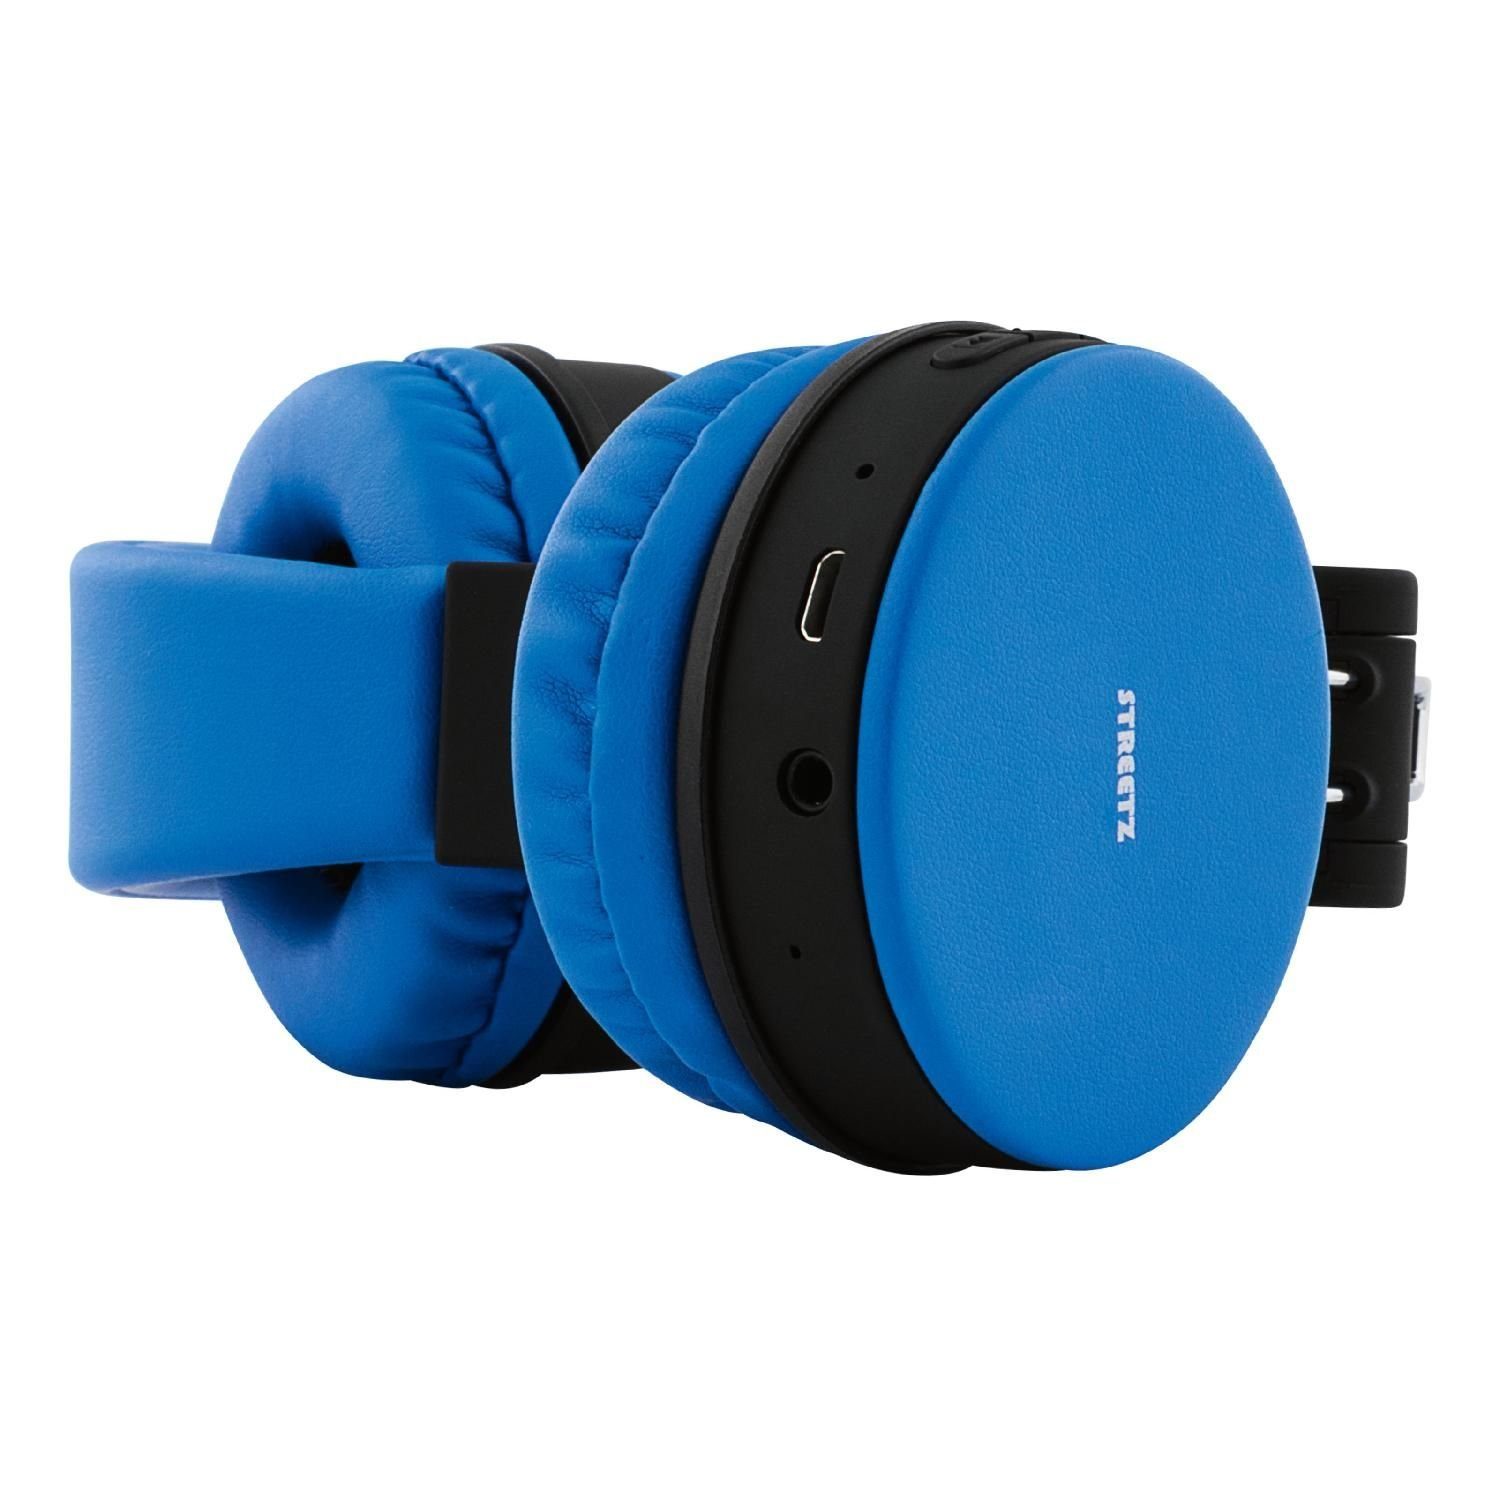 faltbar STREETZ zu Kopfhörer integrierter AUX Freisprecheinrichtung Kabel inkl. (integriertes Bluetooth Spielzeit 22Std Garantie) Mikrofon, blau Jahre bis 5 Kopfhörer mit On-Ear